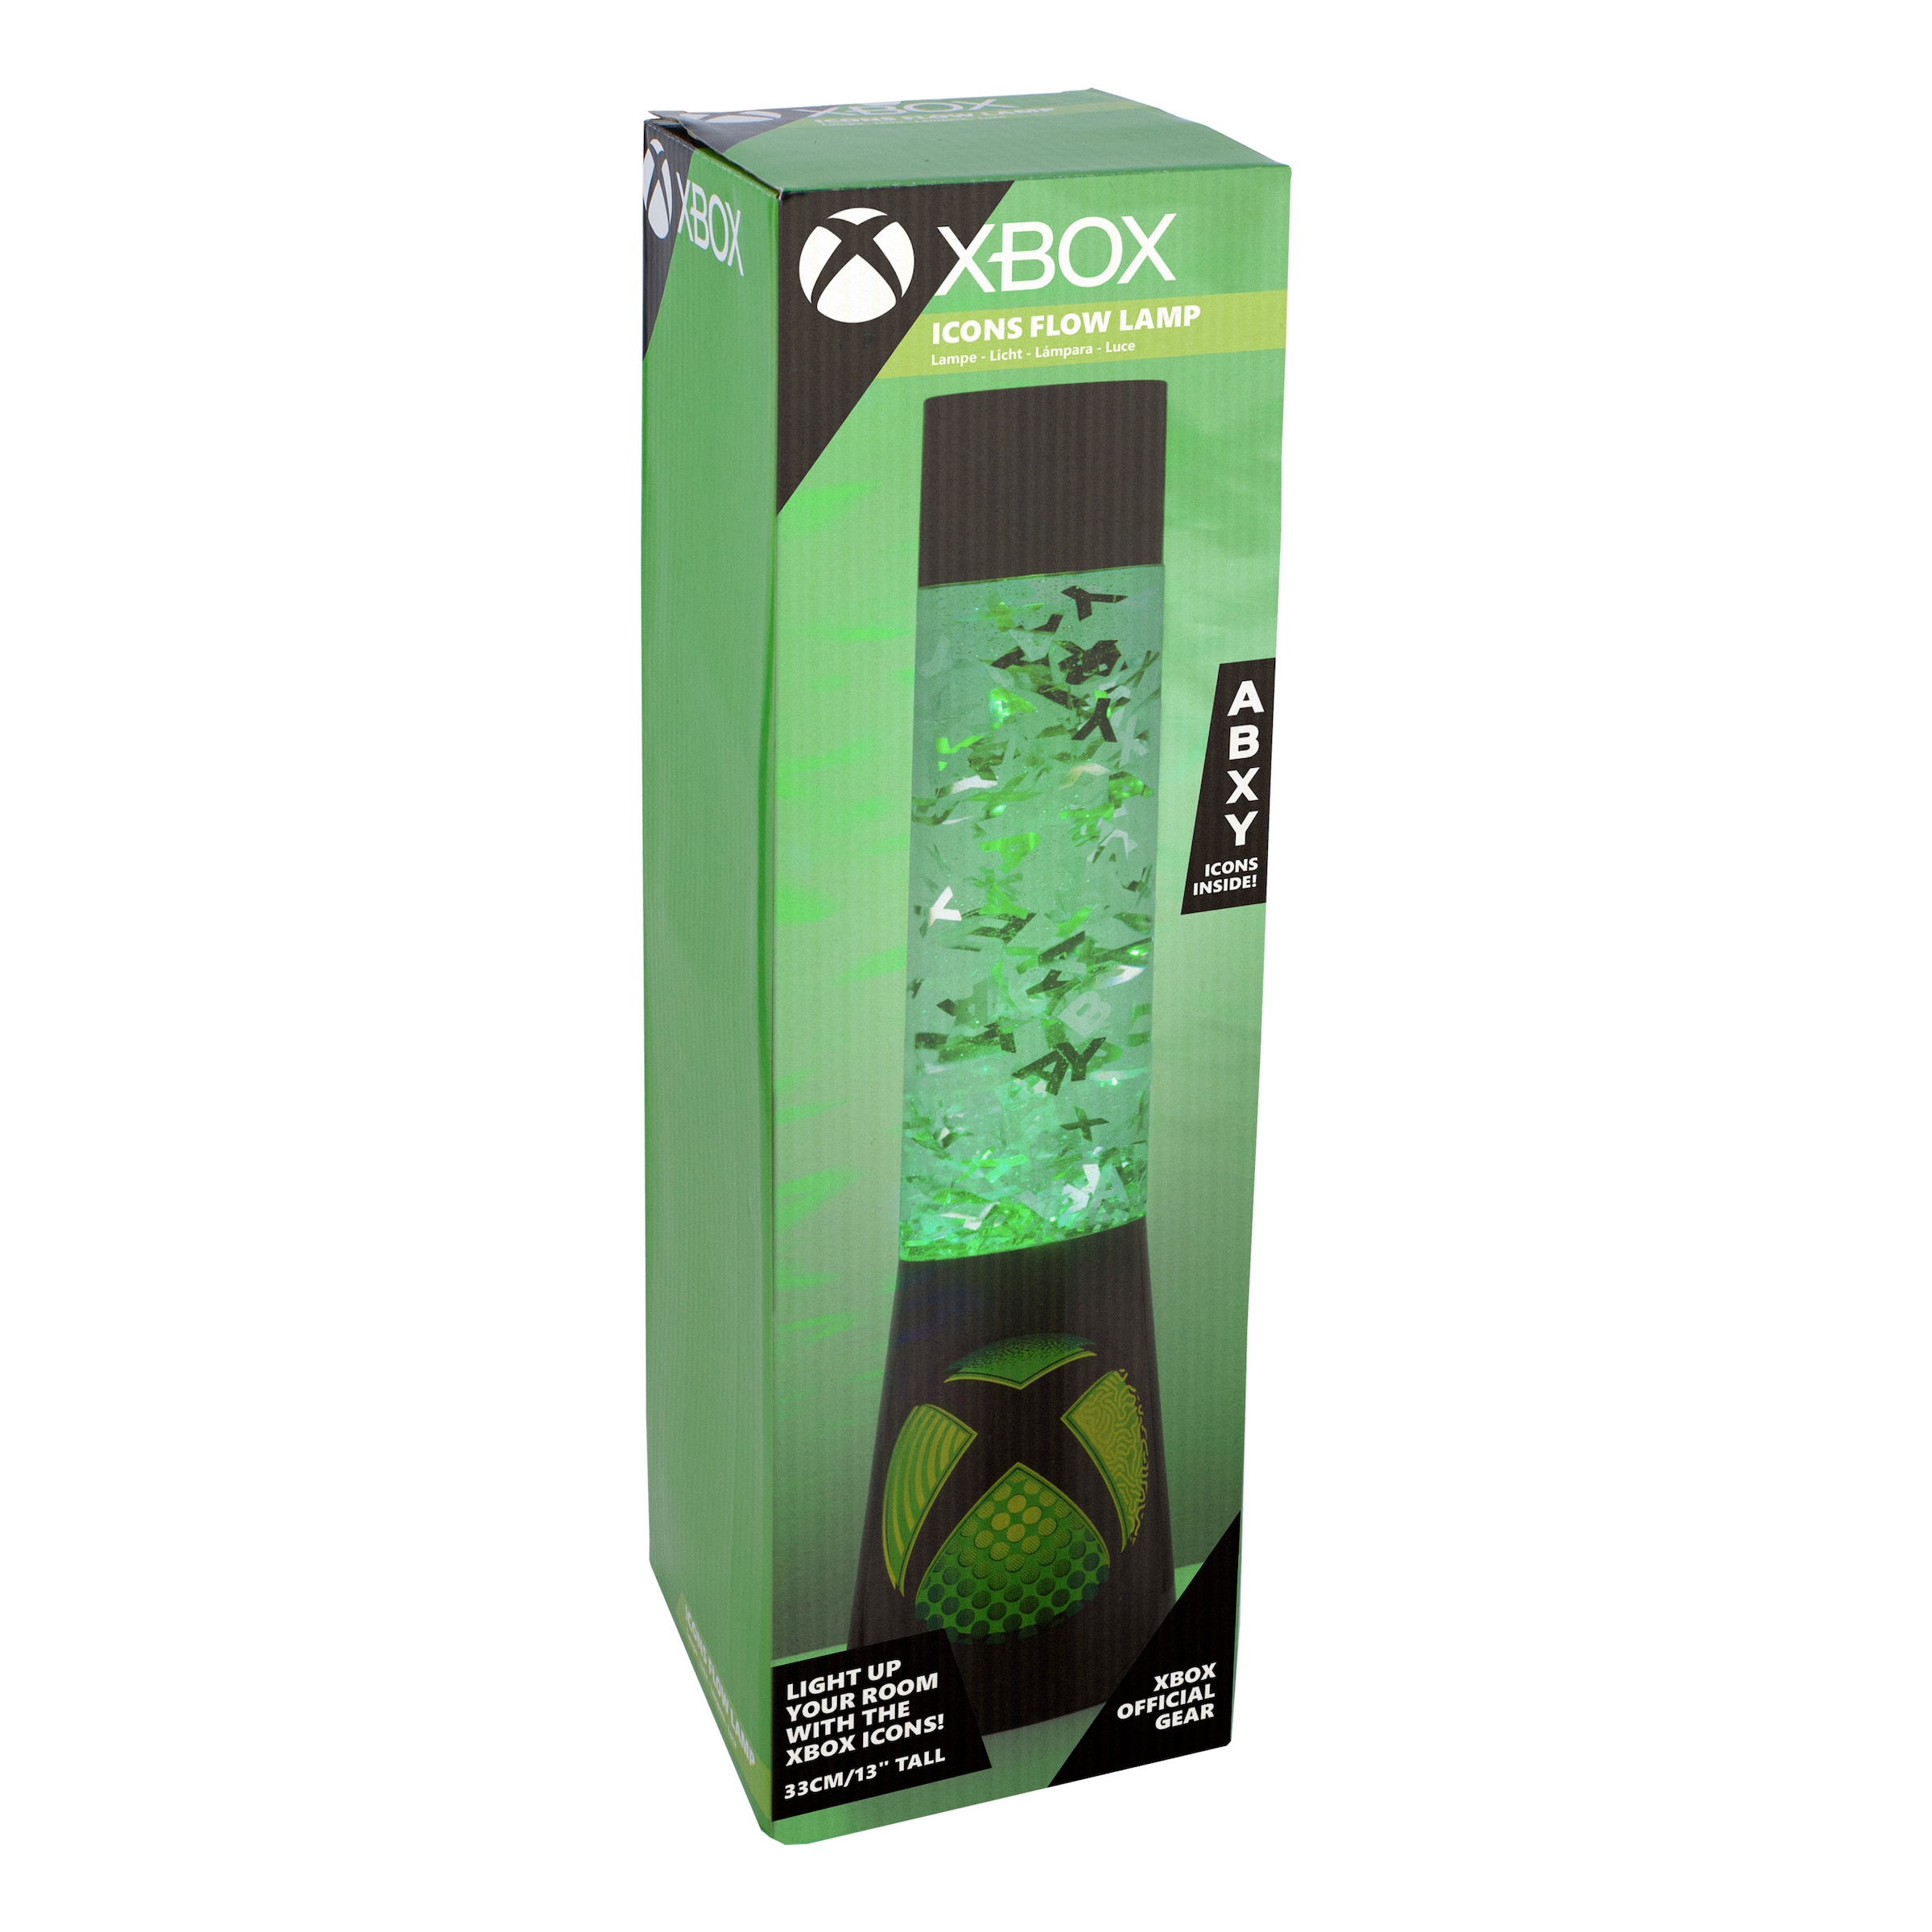 Paladone »Xbox Rechnung auf Lavalampe bestellen LED Kunststoff Glitzerlampe« / Dekolicht